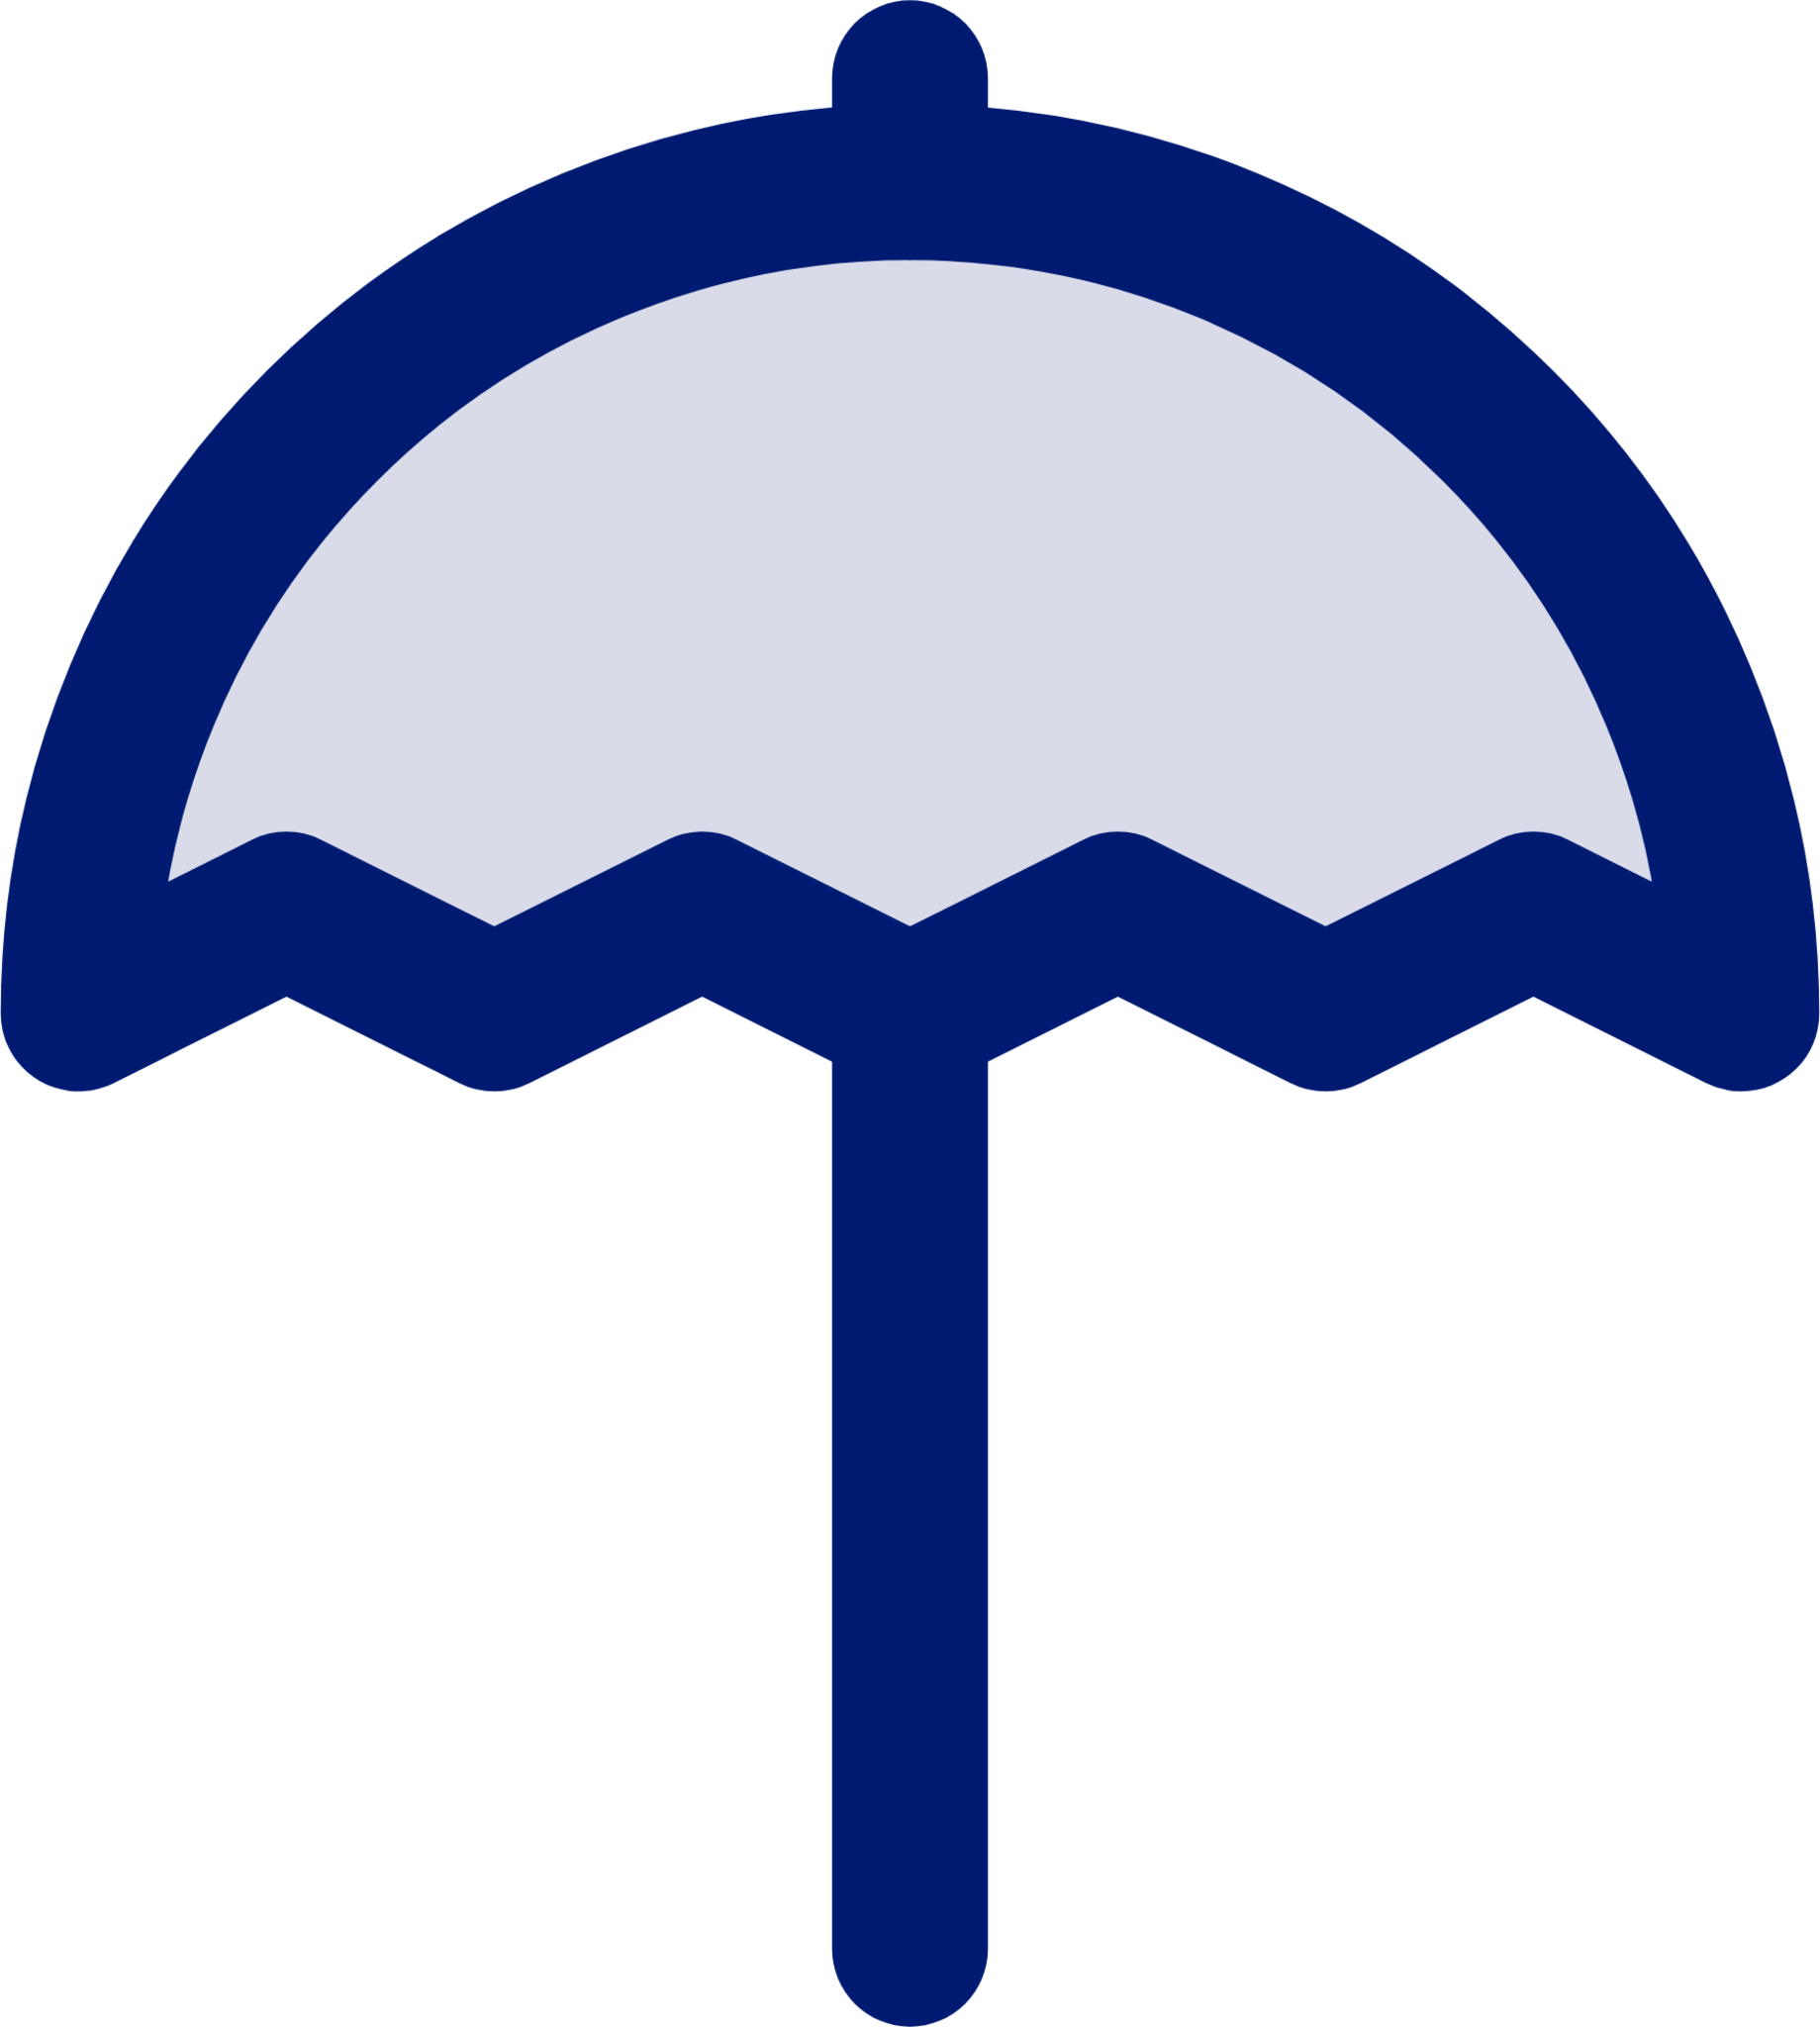 umbrella 2 icon